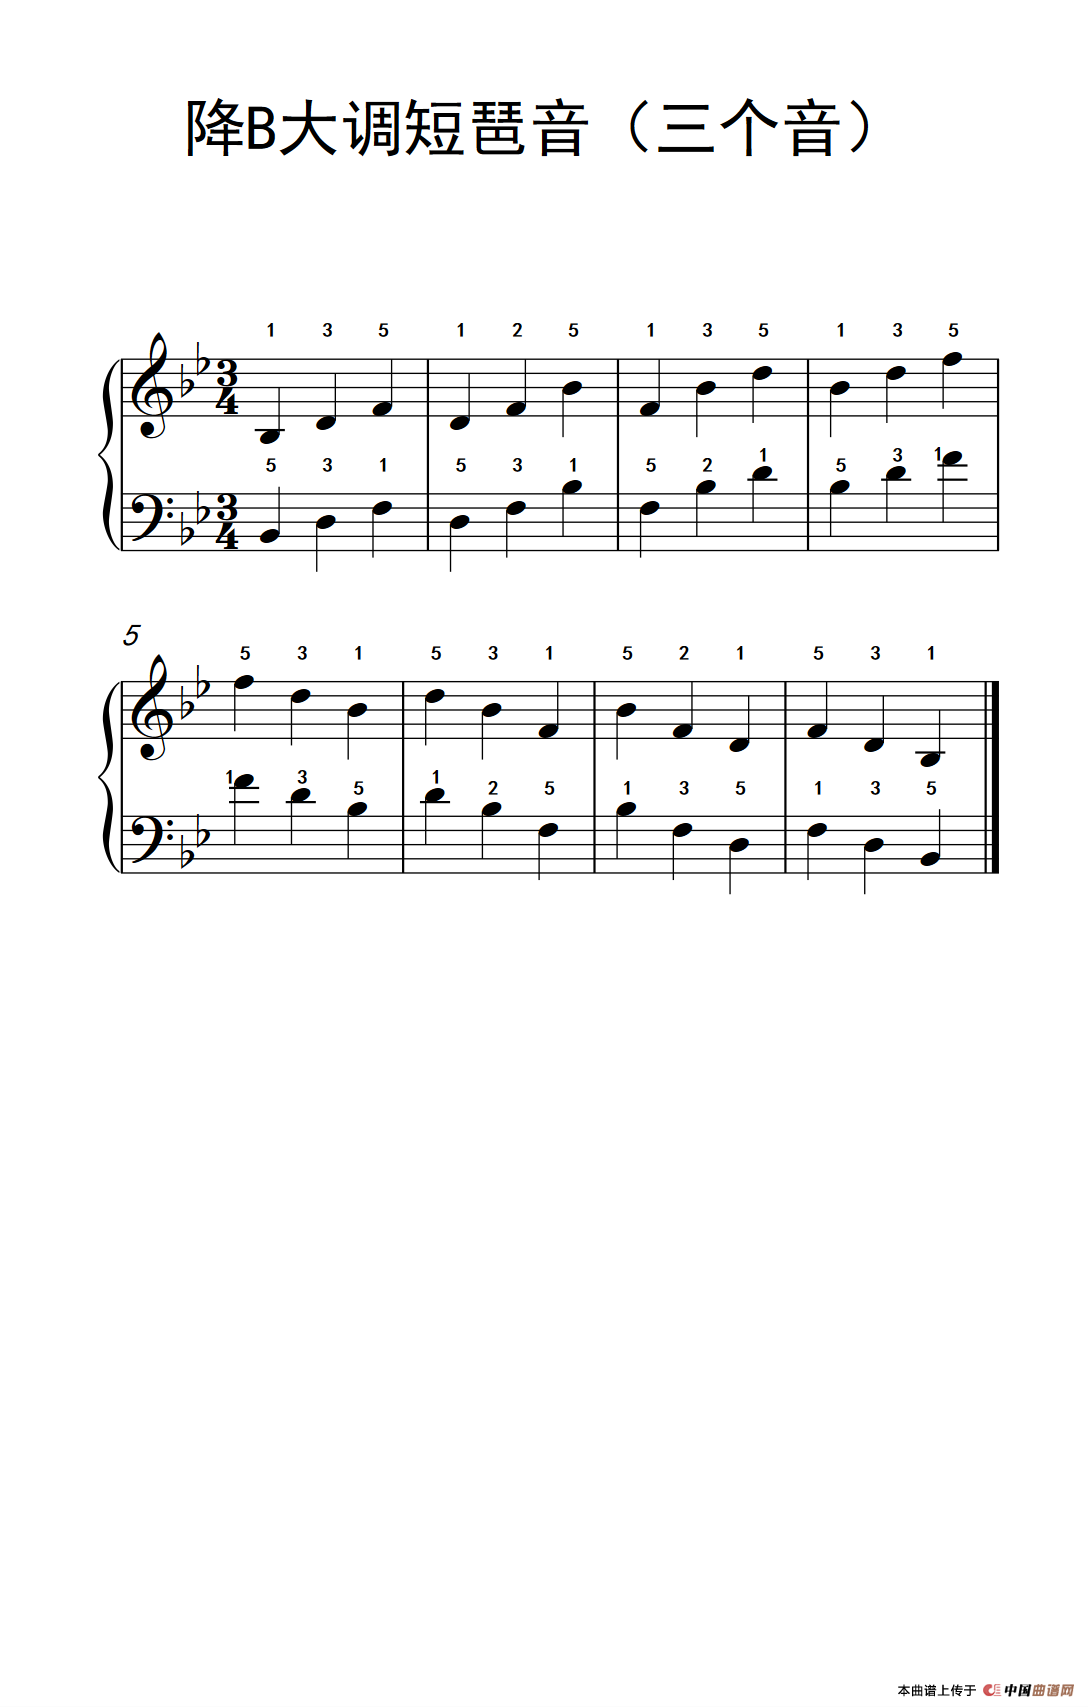 《降B大调短琶音》钢琴曲谱图分享